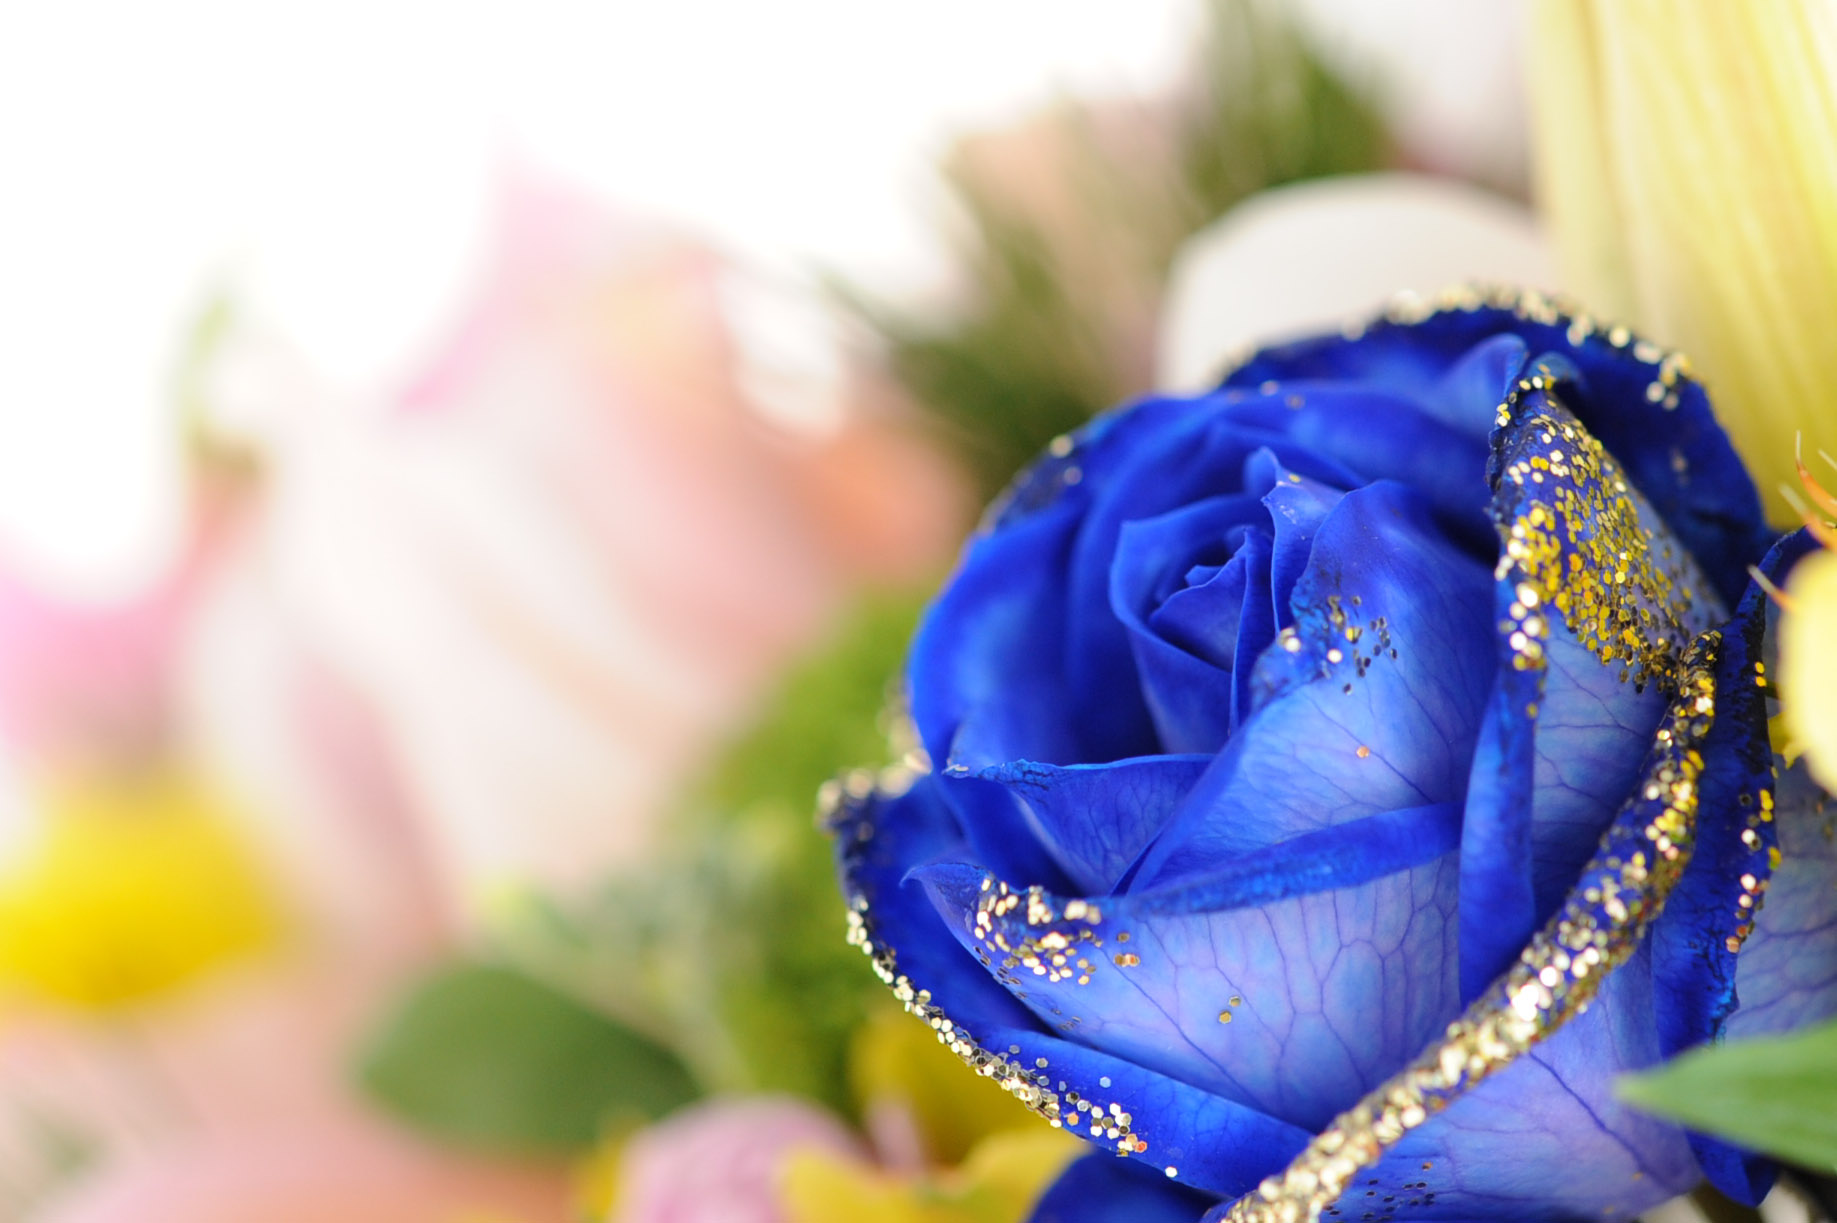 ユニーク待ち受け 壁紙 青い バラ すべての美しい花の画像